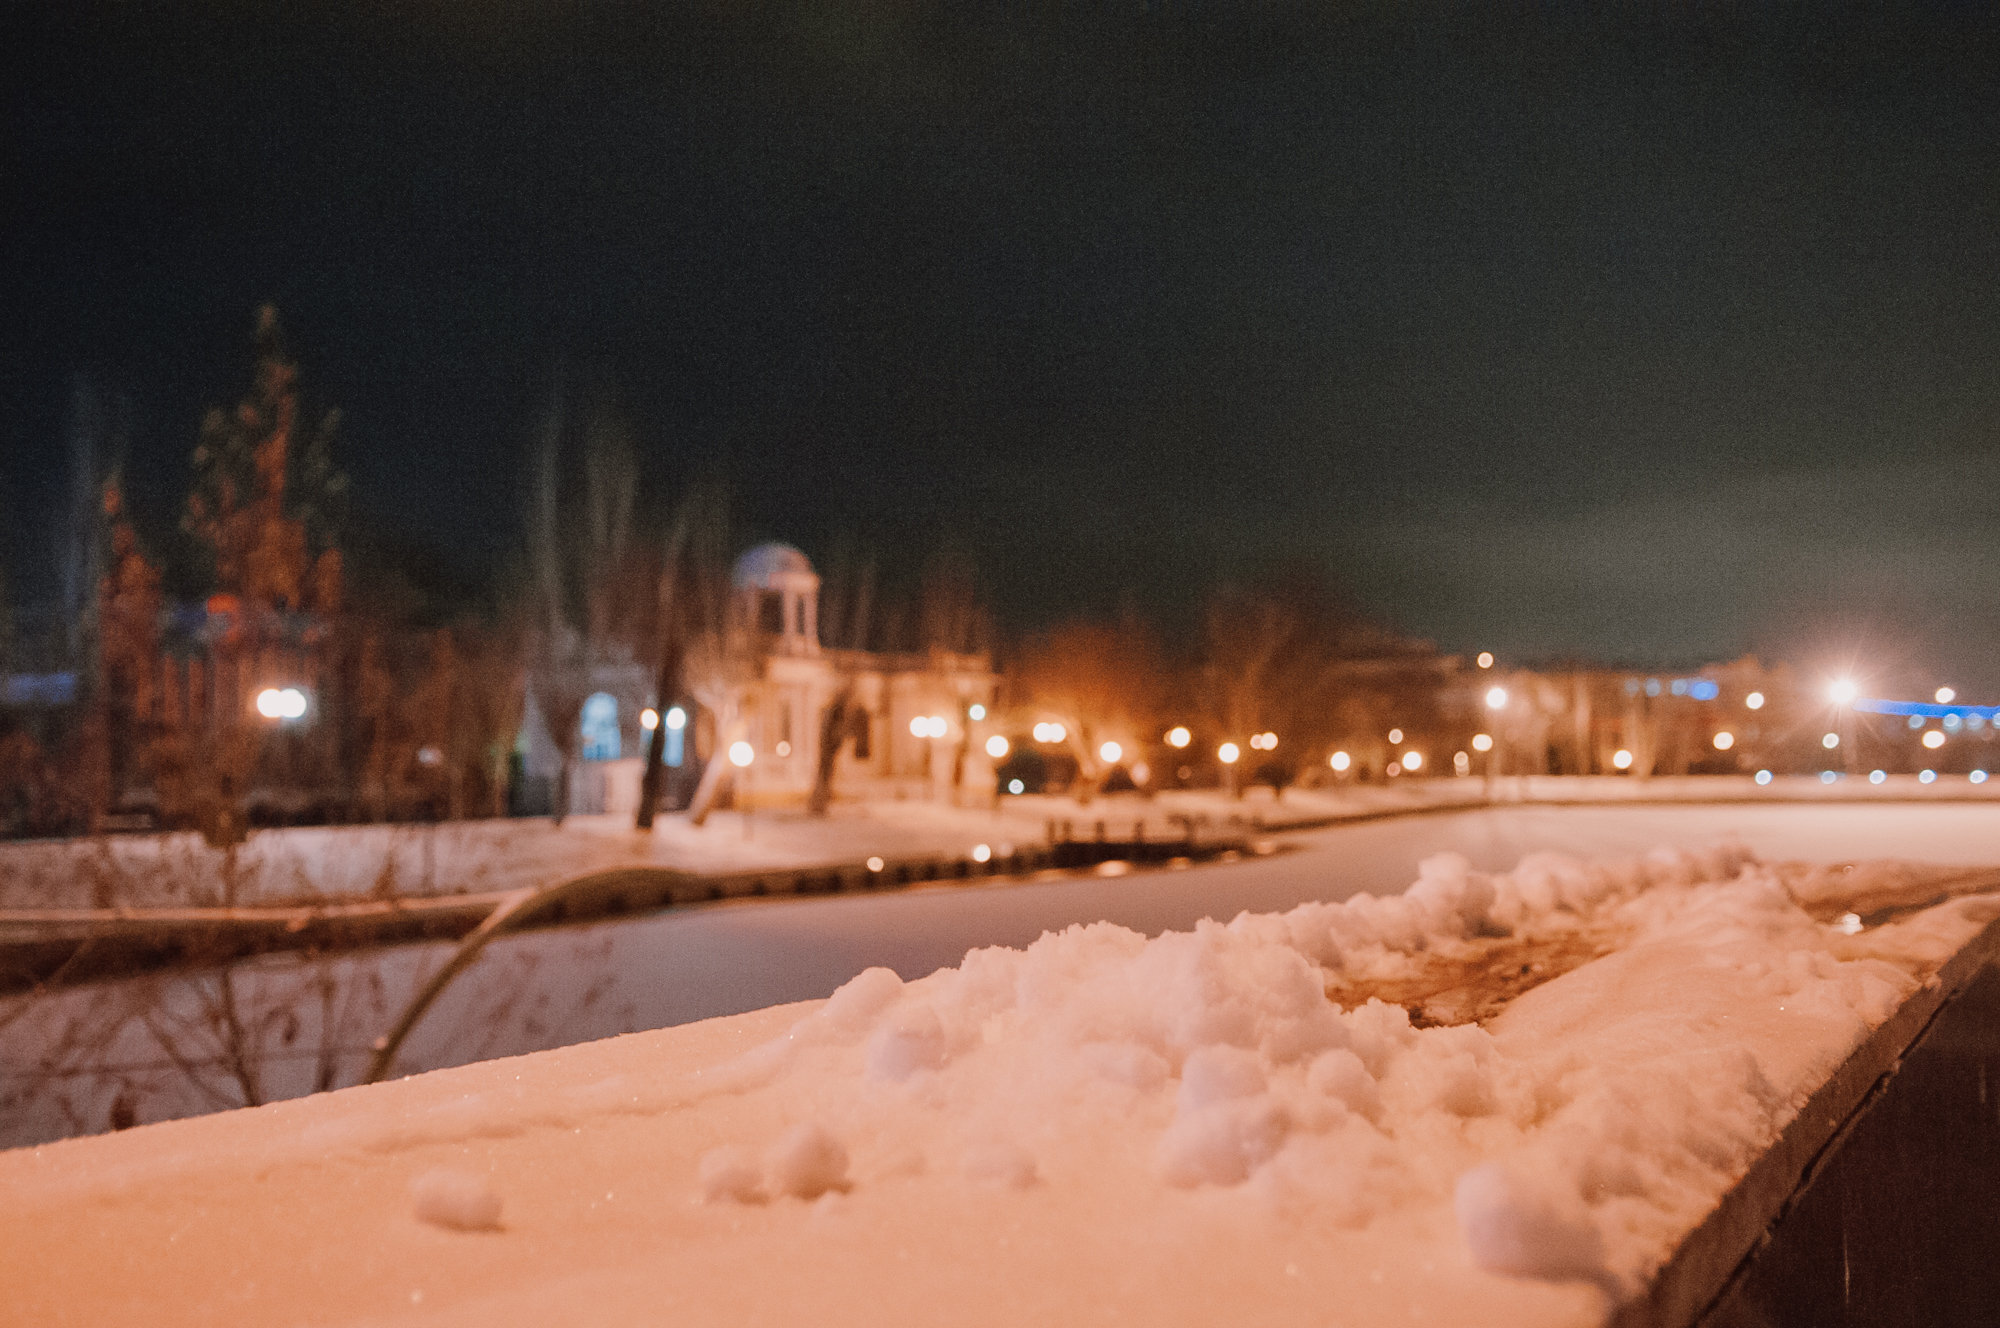 DSC 6662 В Астрахань пришла зима! 15 спецмашин вышли на борьбу со снегом. Фоторепортаж